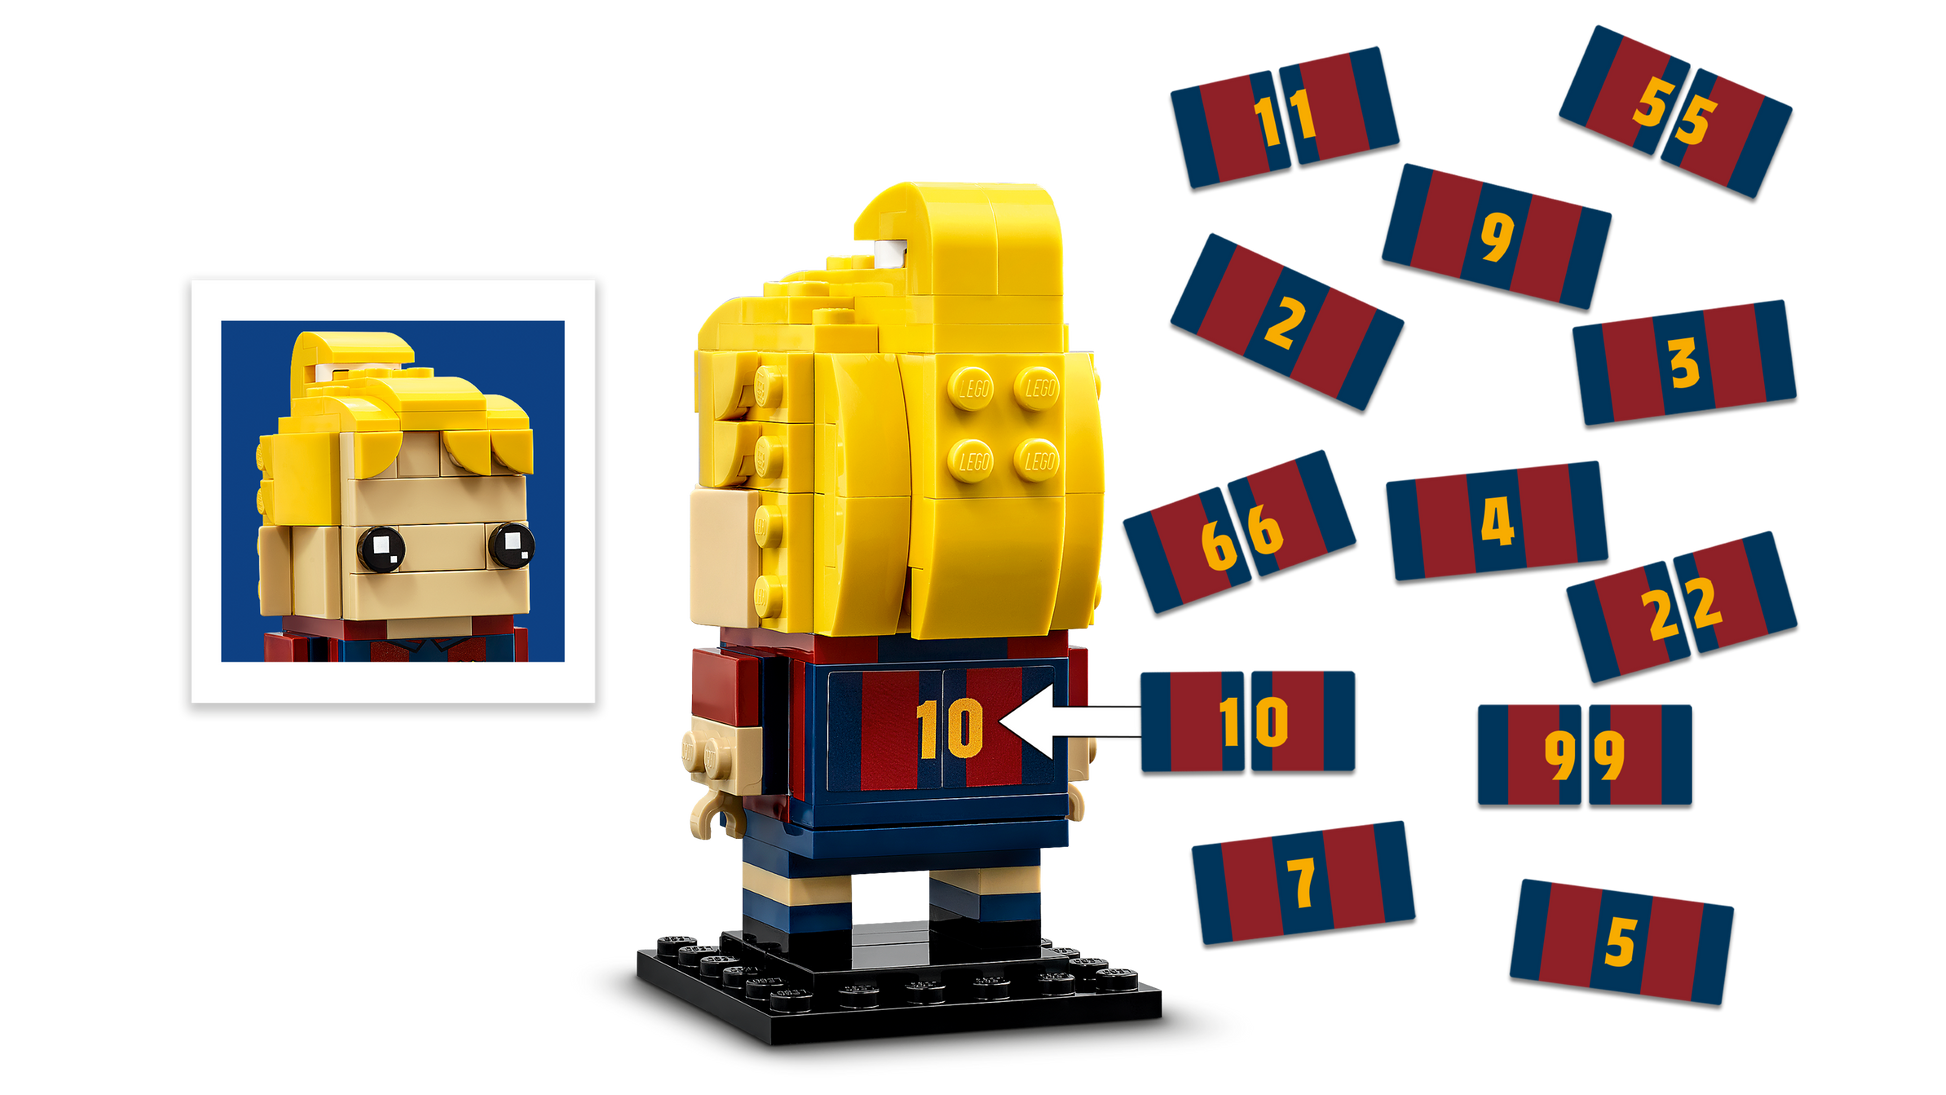 LEGO® set 40542